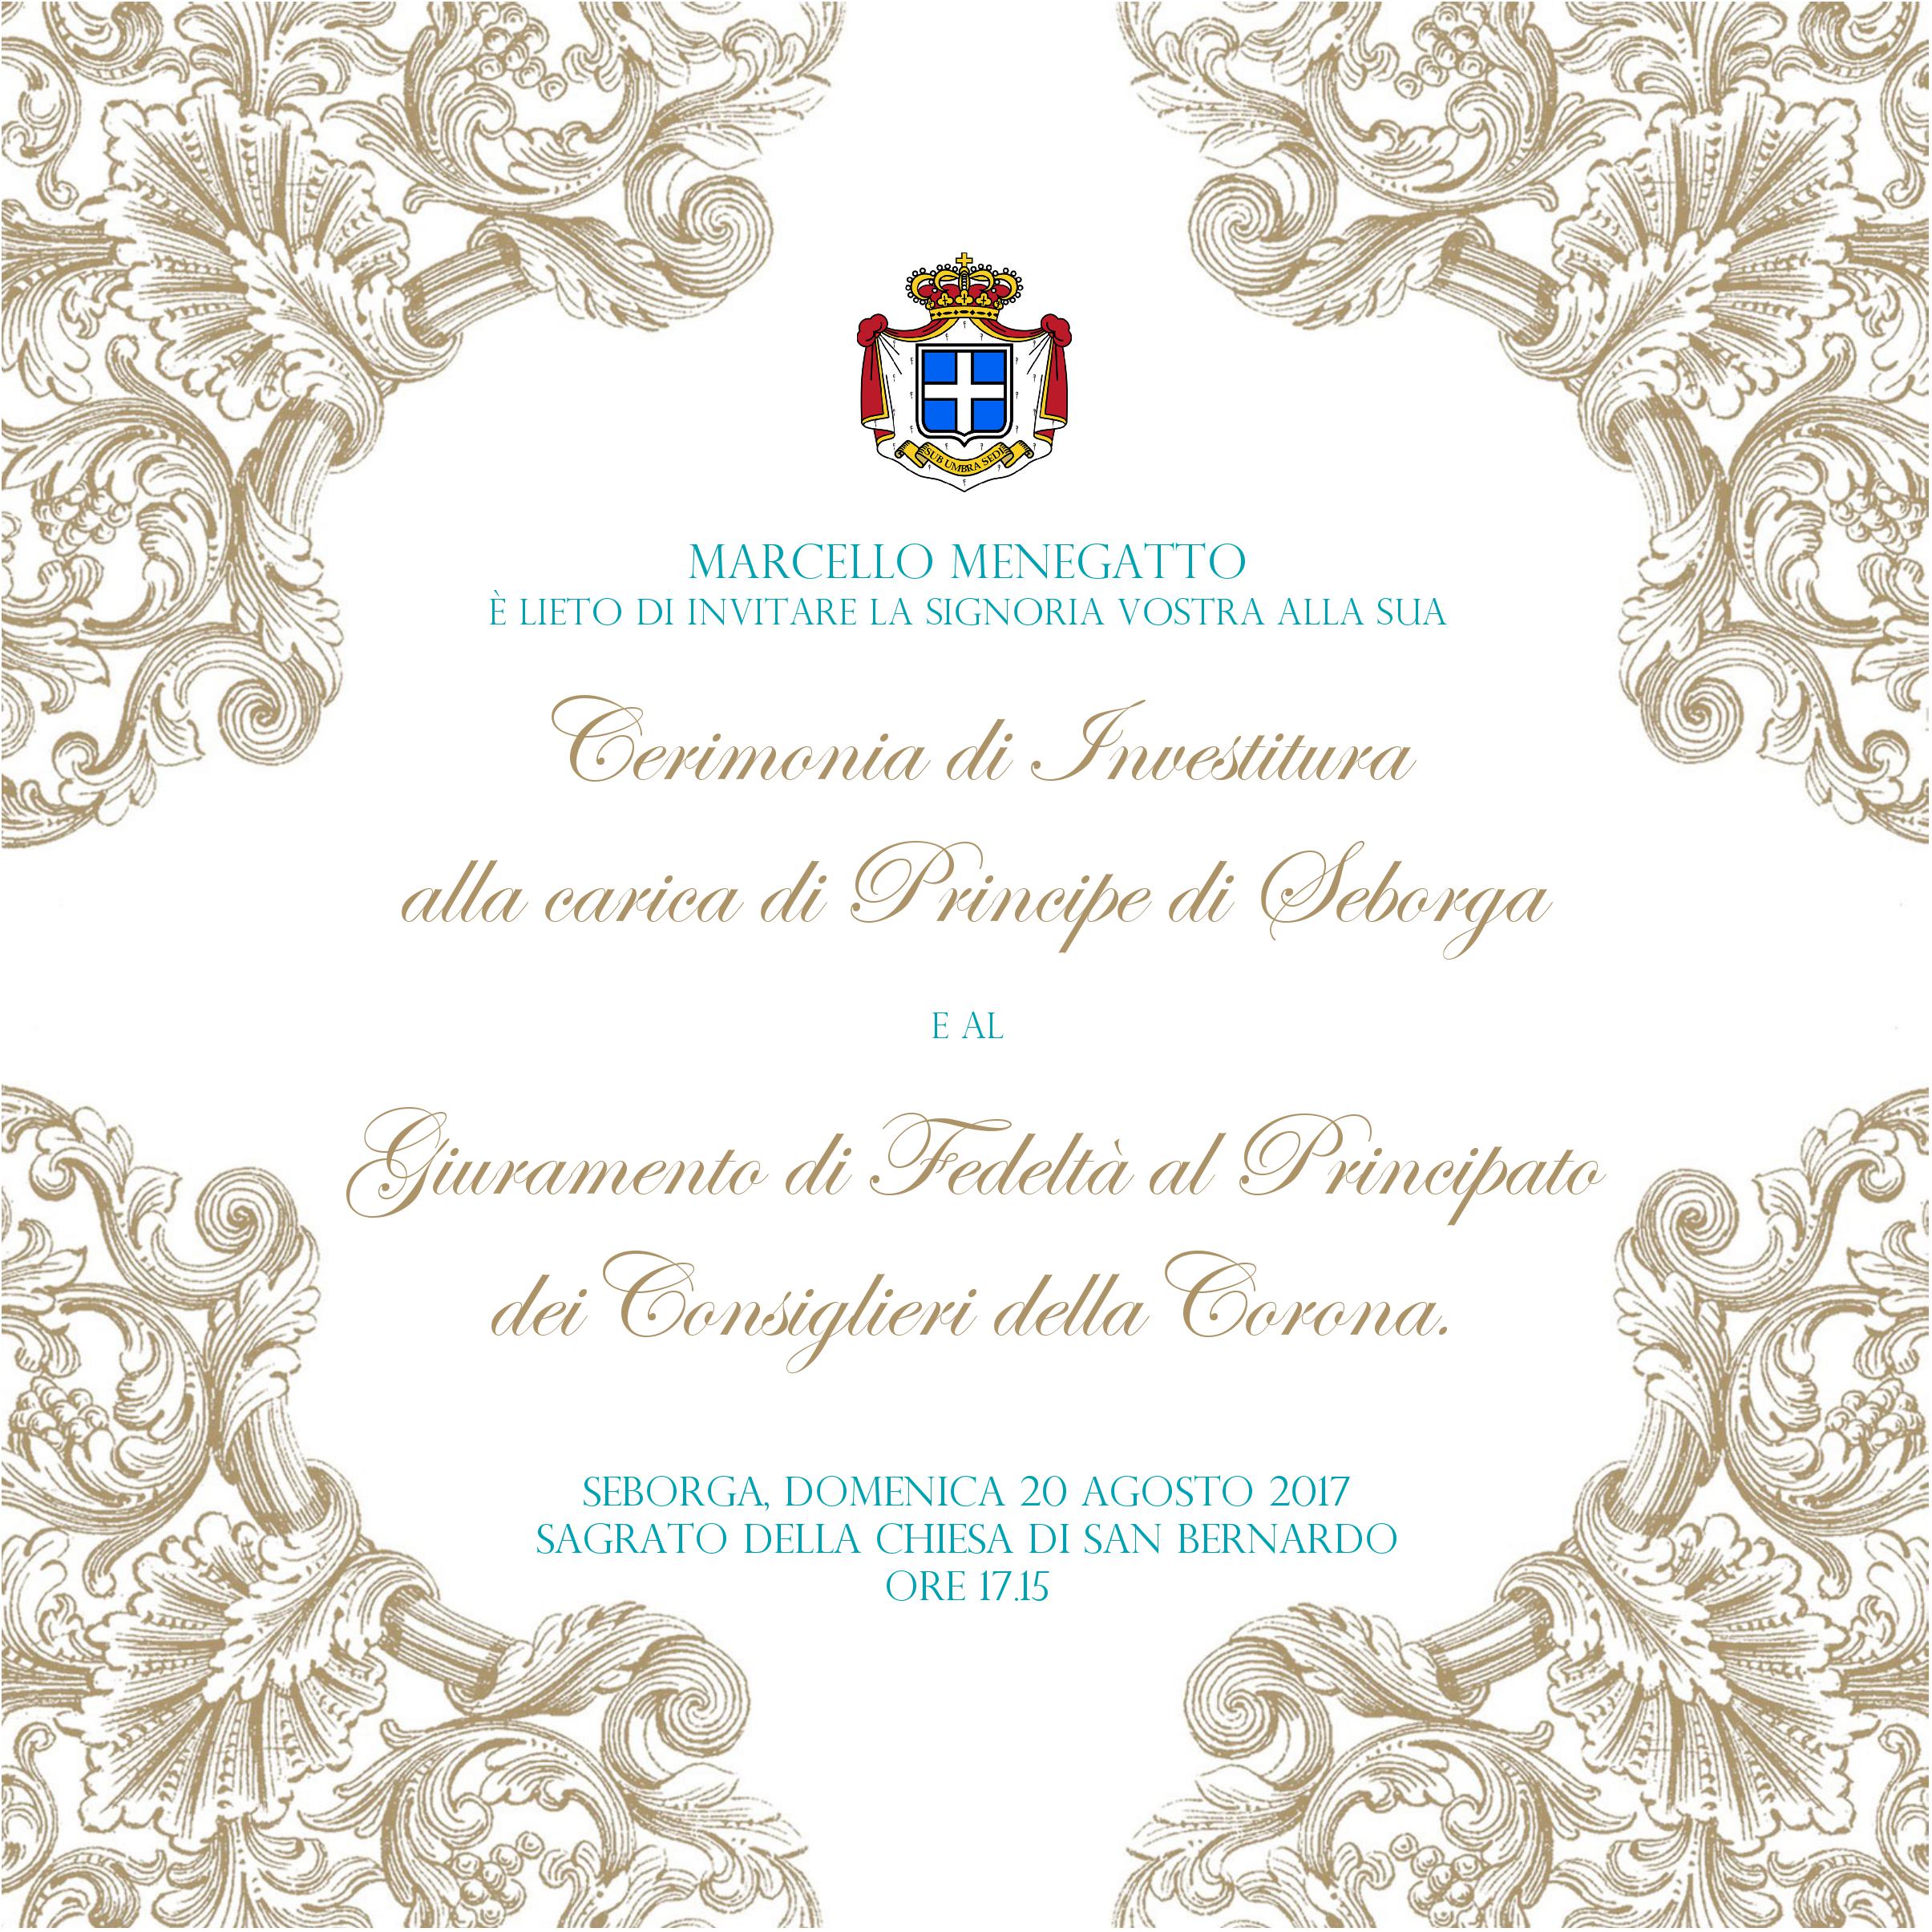 Cerimonia di Investitura del Principe Marcello e Giuramento di Fedeltà al Principato dei Consiglieri della Corona